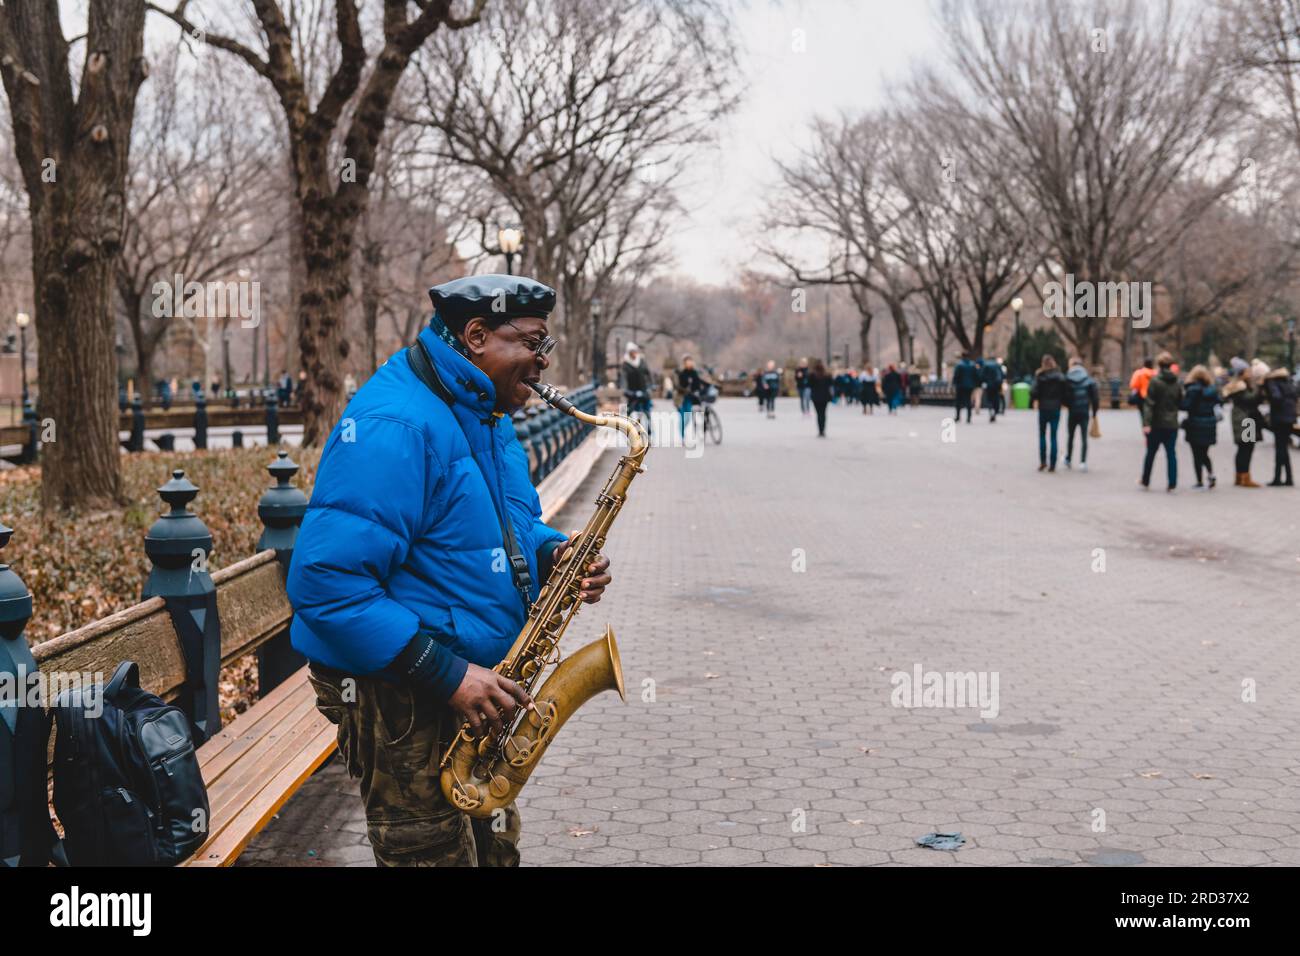 Busker jouant du saxophone tandis que d'autres passants passent autour de lui, Central Park, New York Banque D'Images